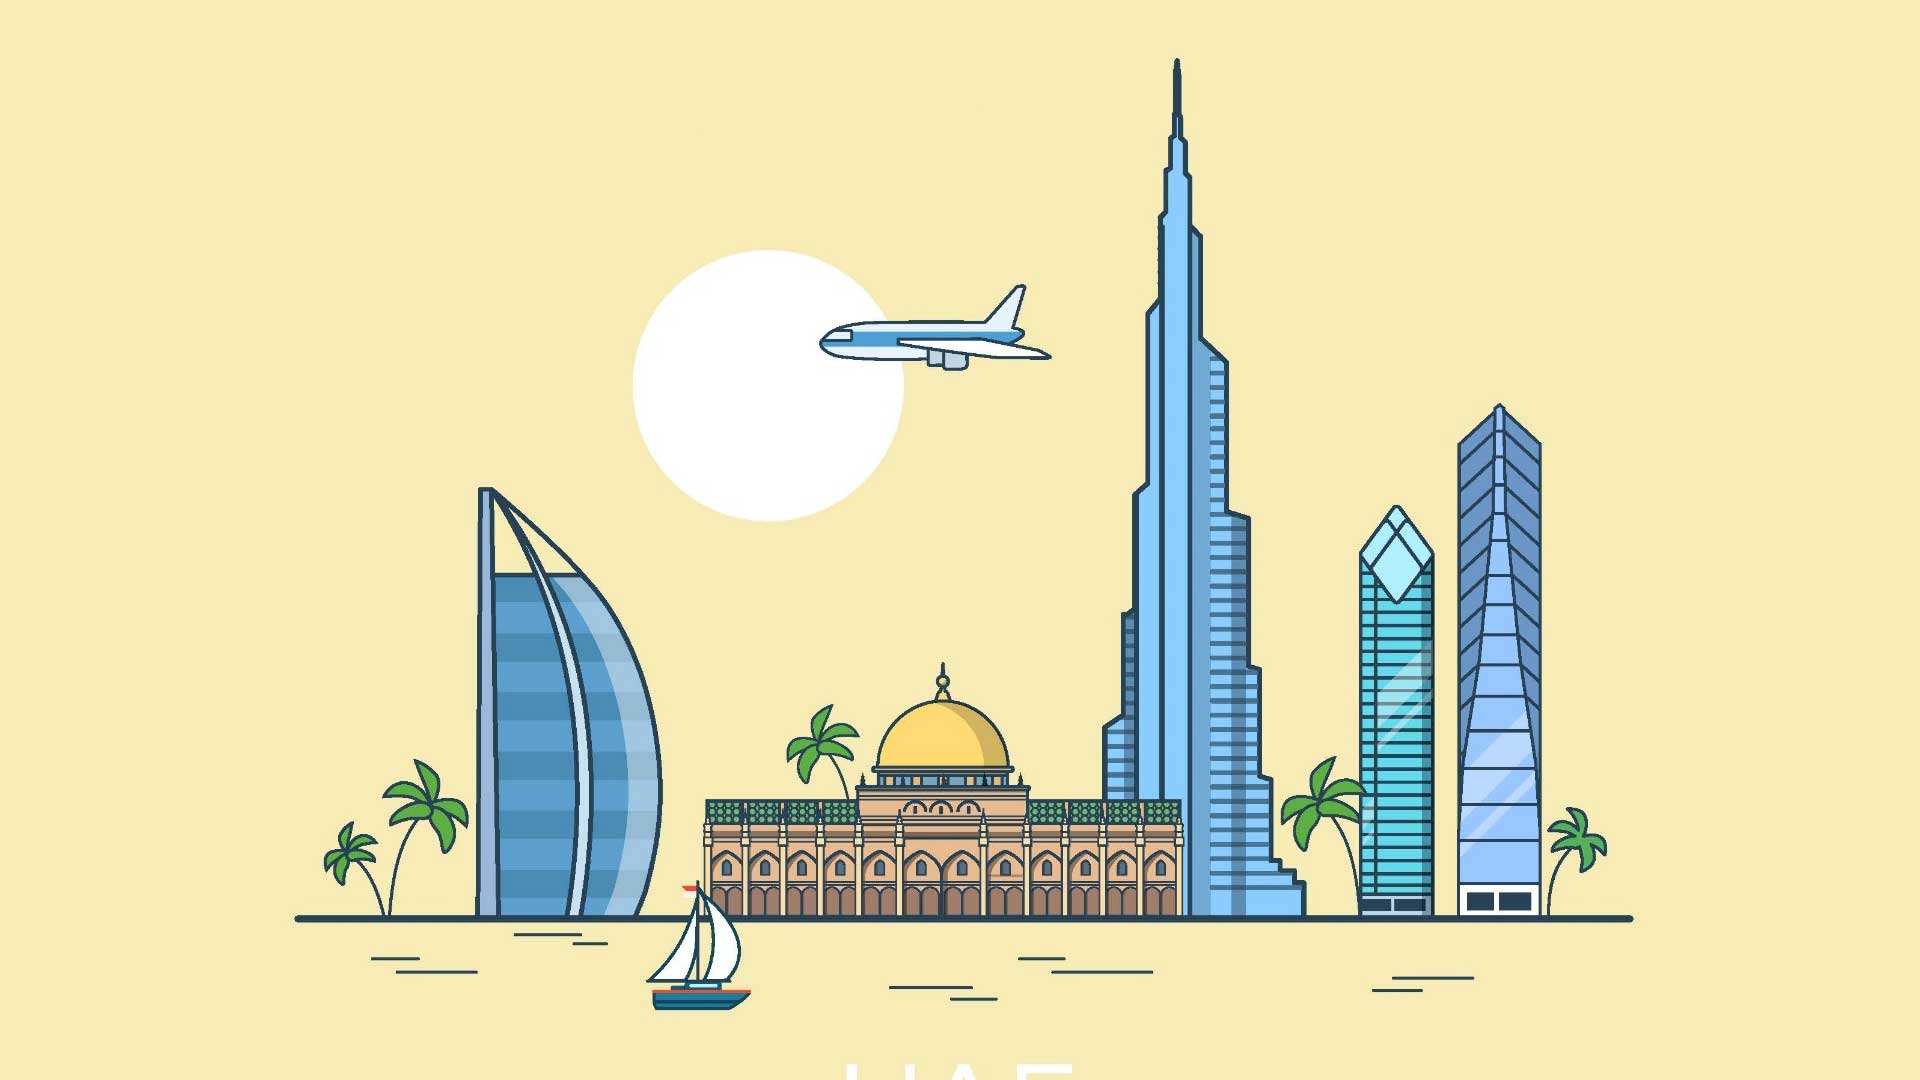 UAE Tourism